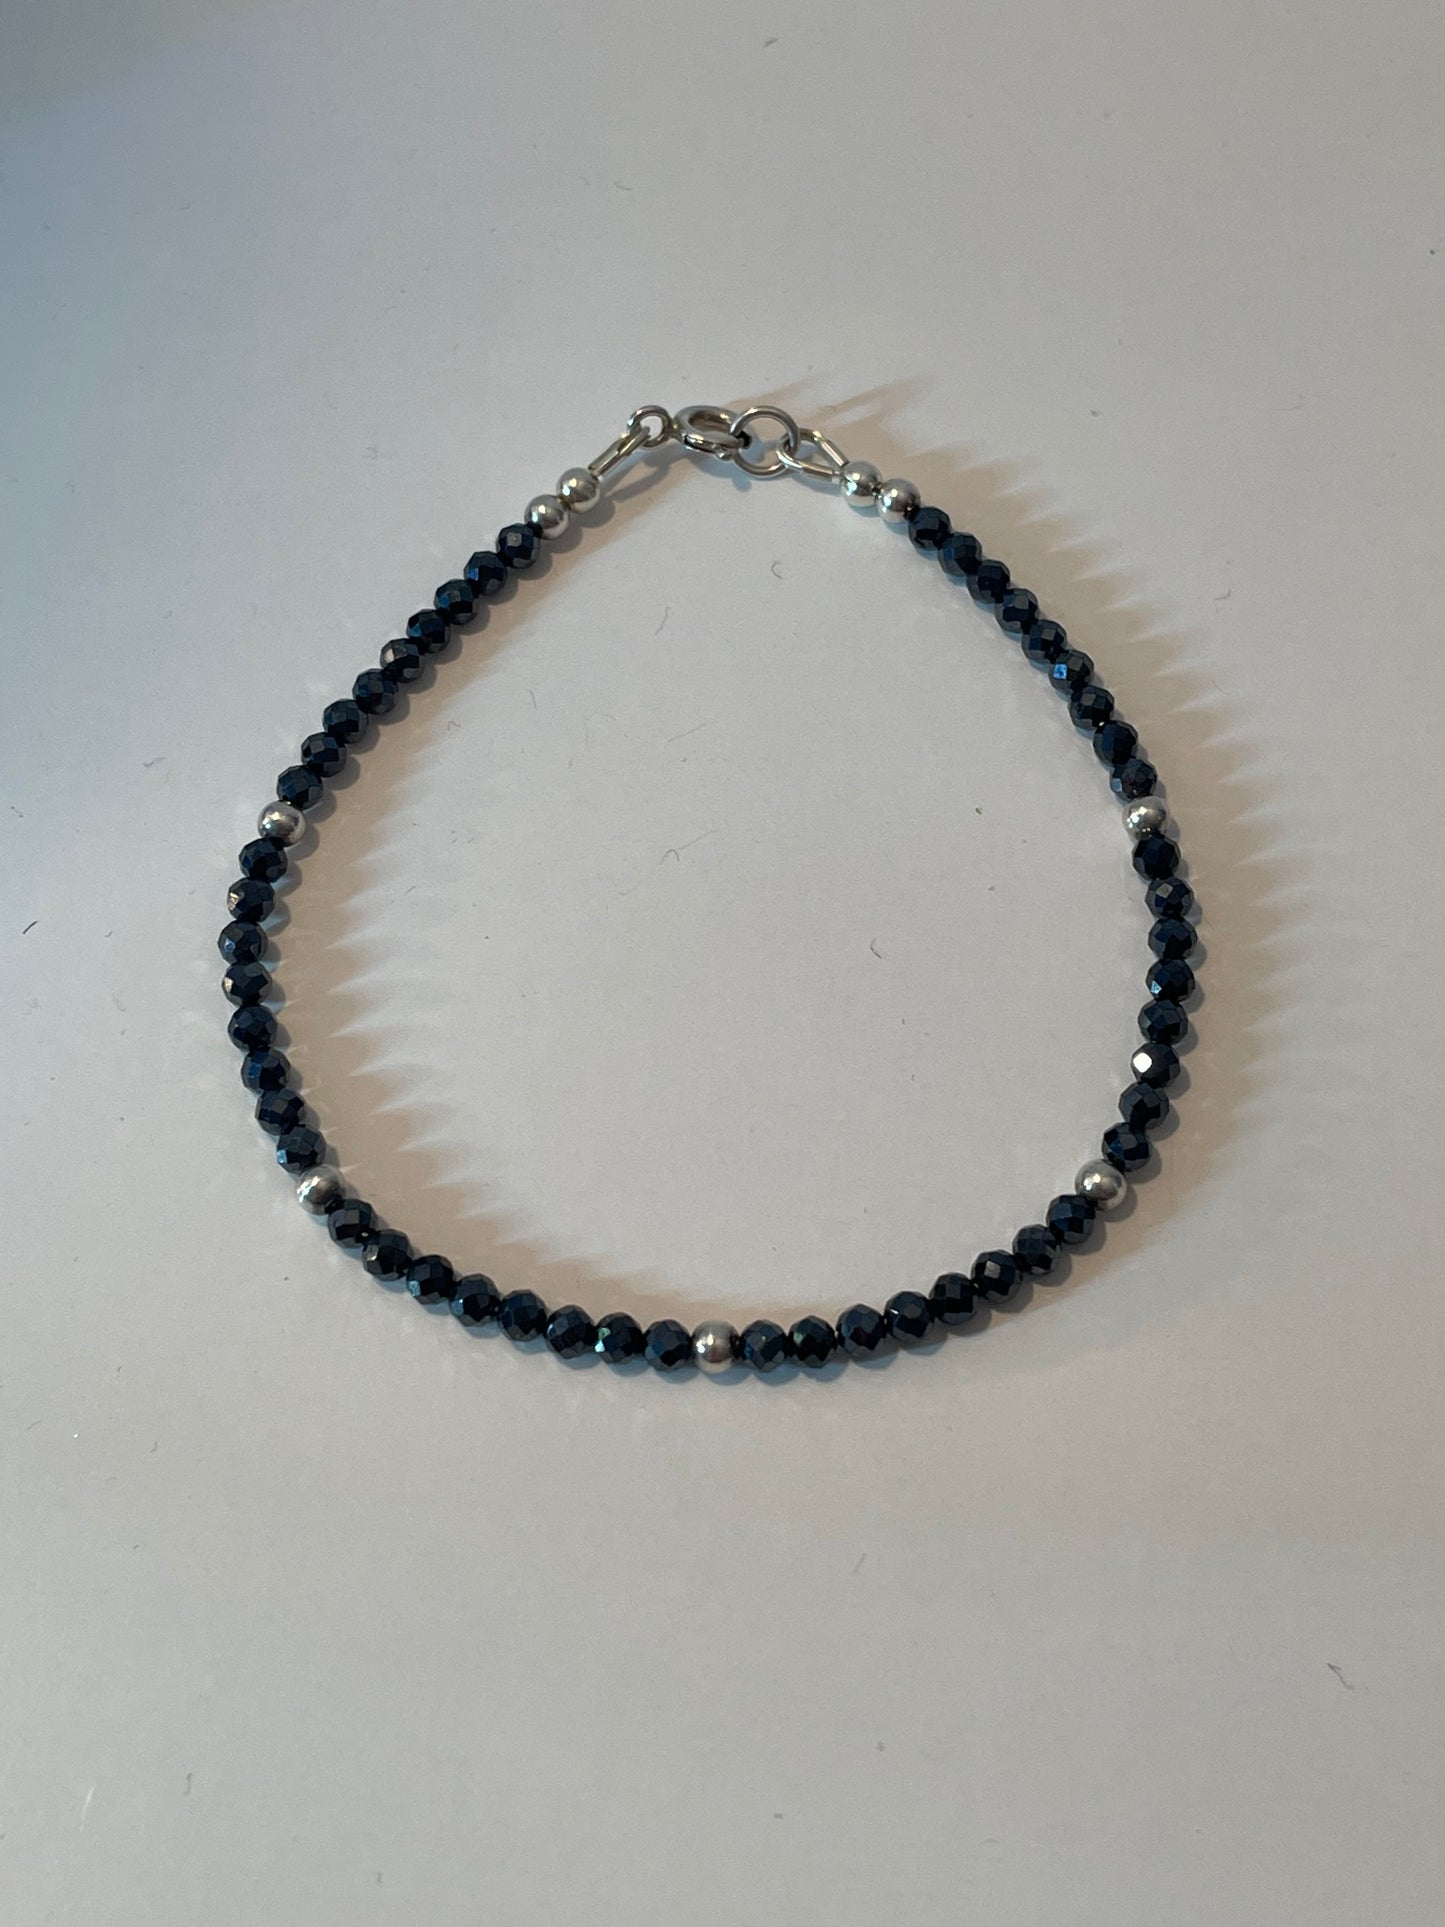 Black Spinel bracelets